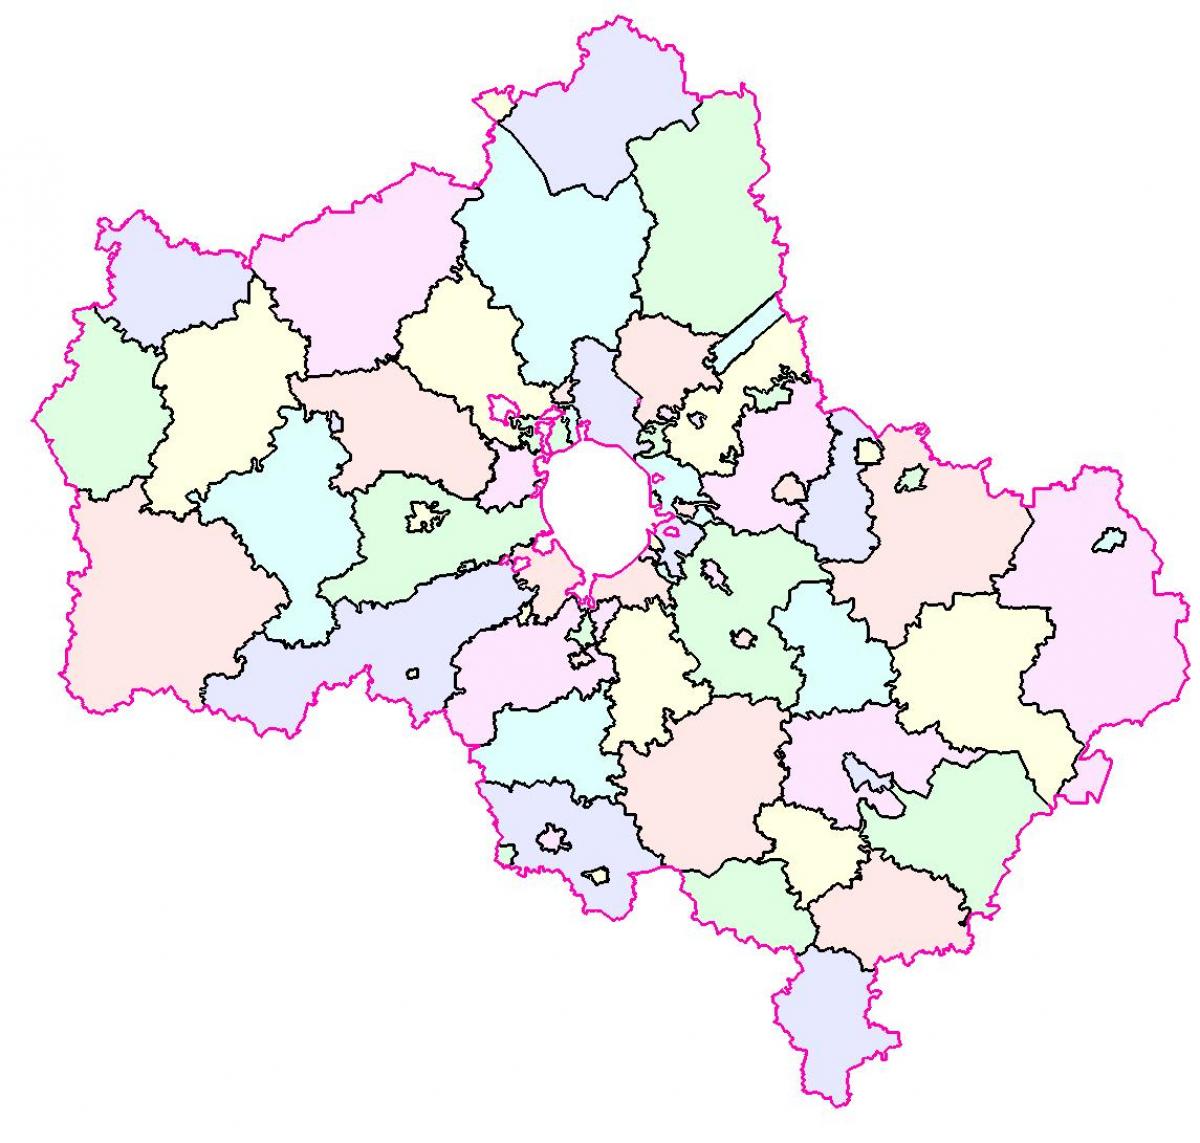 Moskva бүс нутгийн газрын зураг